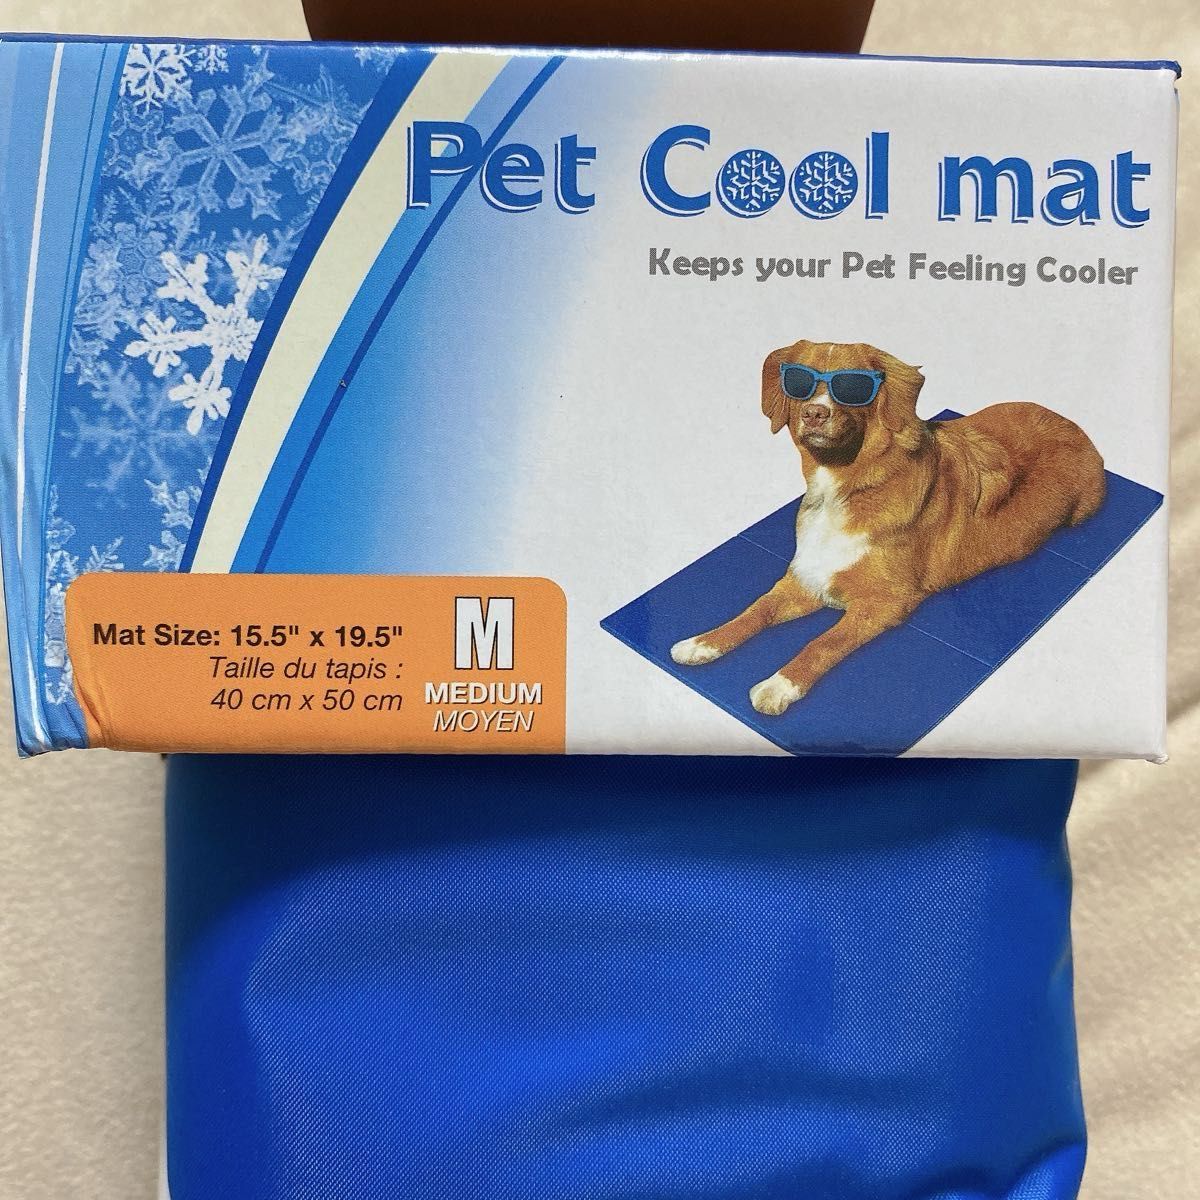 冷却シート 冷感シート 冷感マット ペット 犬猫 ネコ 熱中症対策 M ブルー 青 夏 クールマット ひんやり 涼しい 暑さ対策